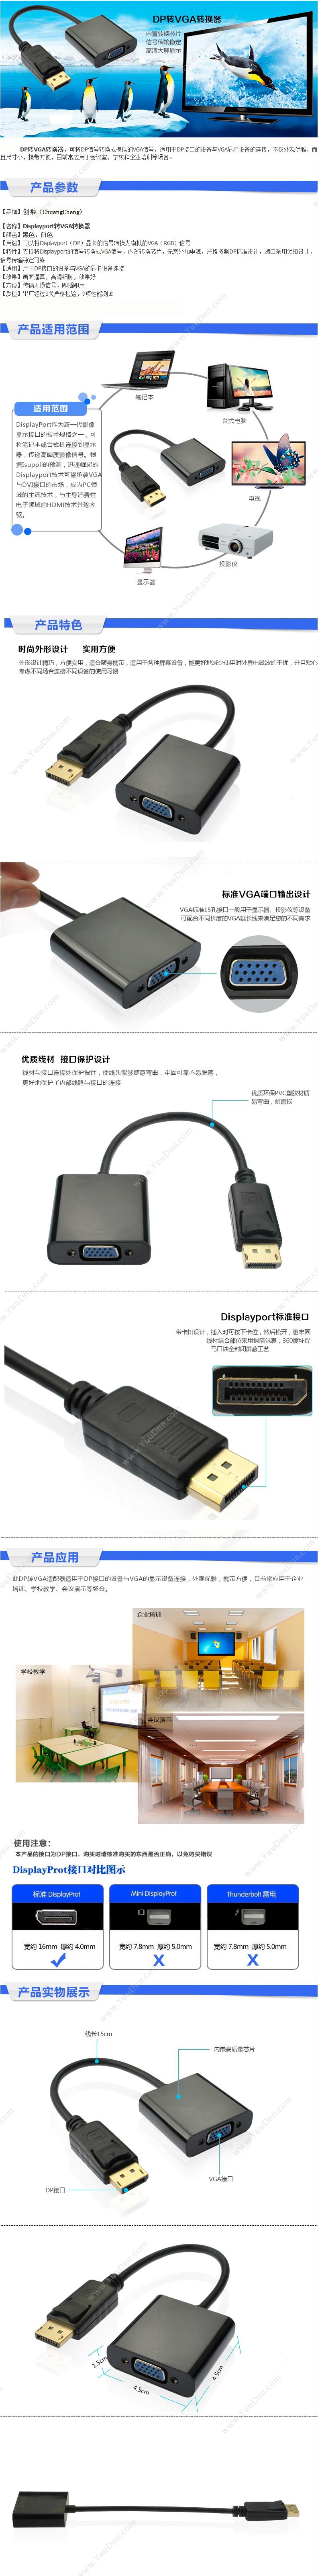 创乘 ChuangCheng CC305 DisplayPort转VGA转换器 （黑） 扩展配件